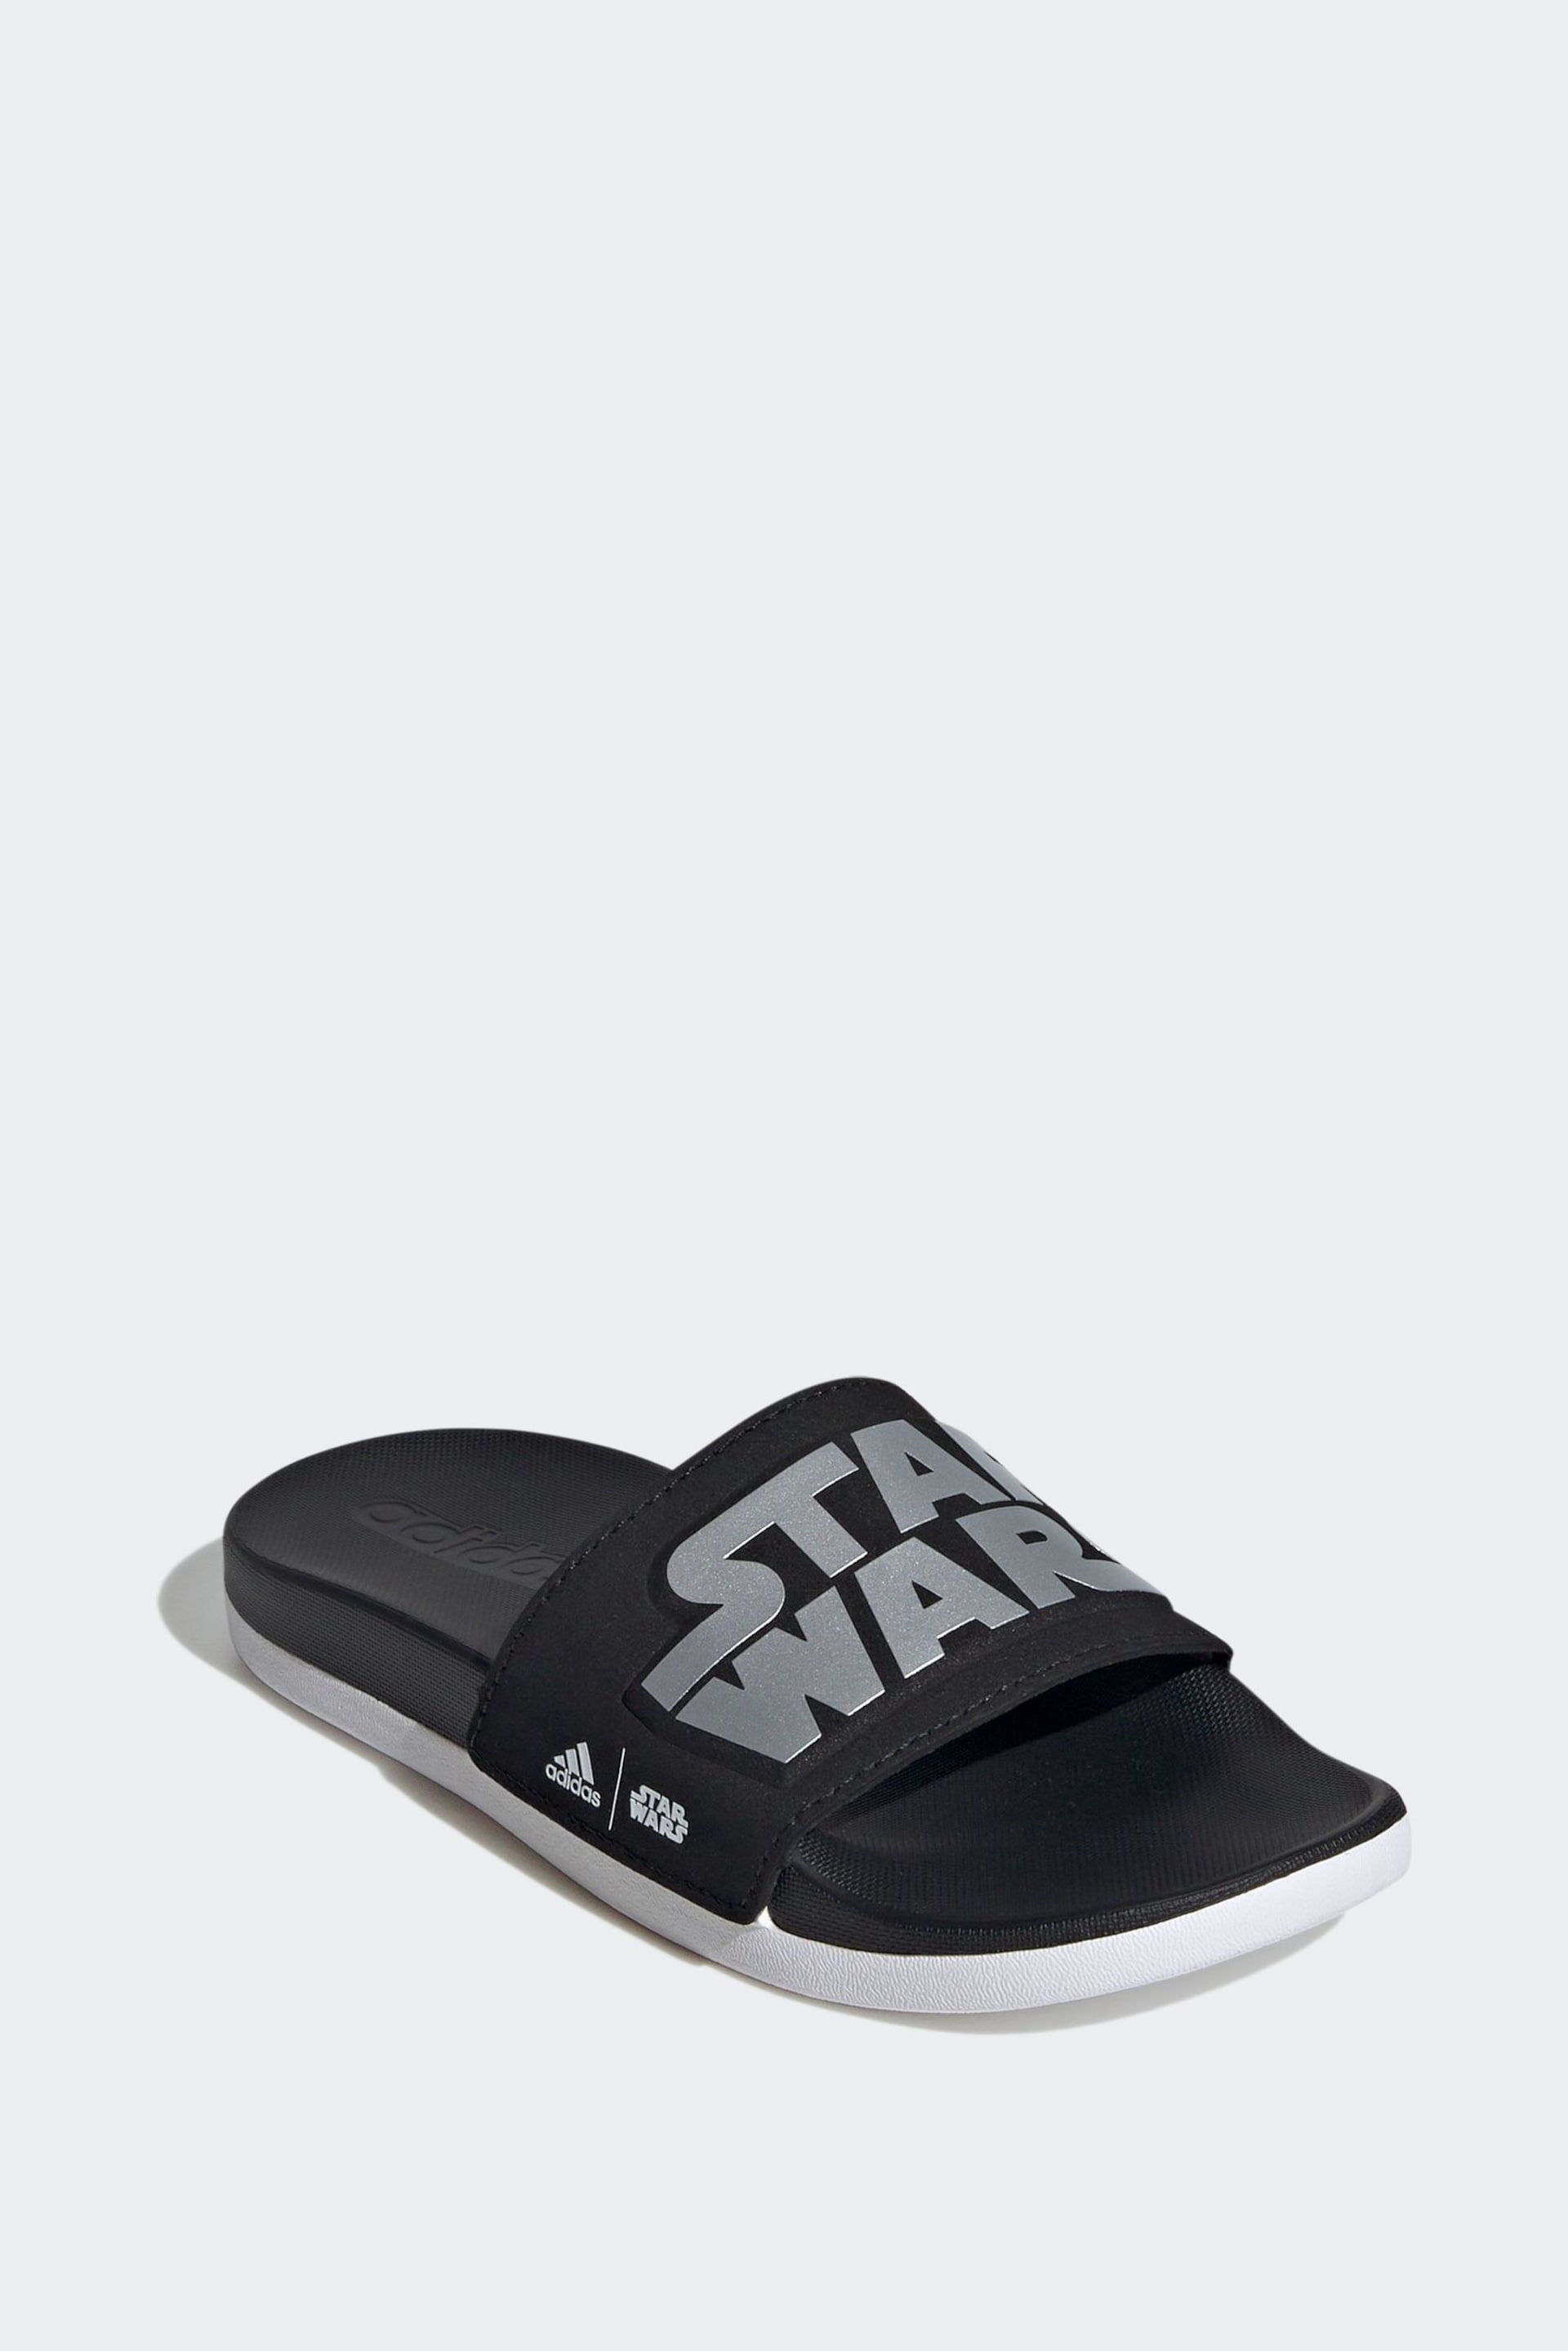 adidas Black Adilette Comfort Star Wars Sandals - Image 4 of 9